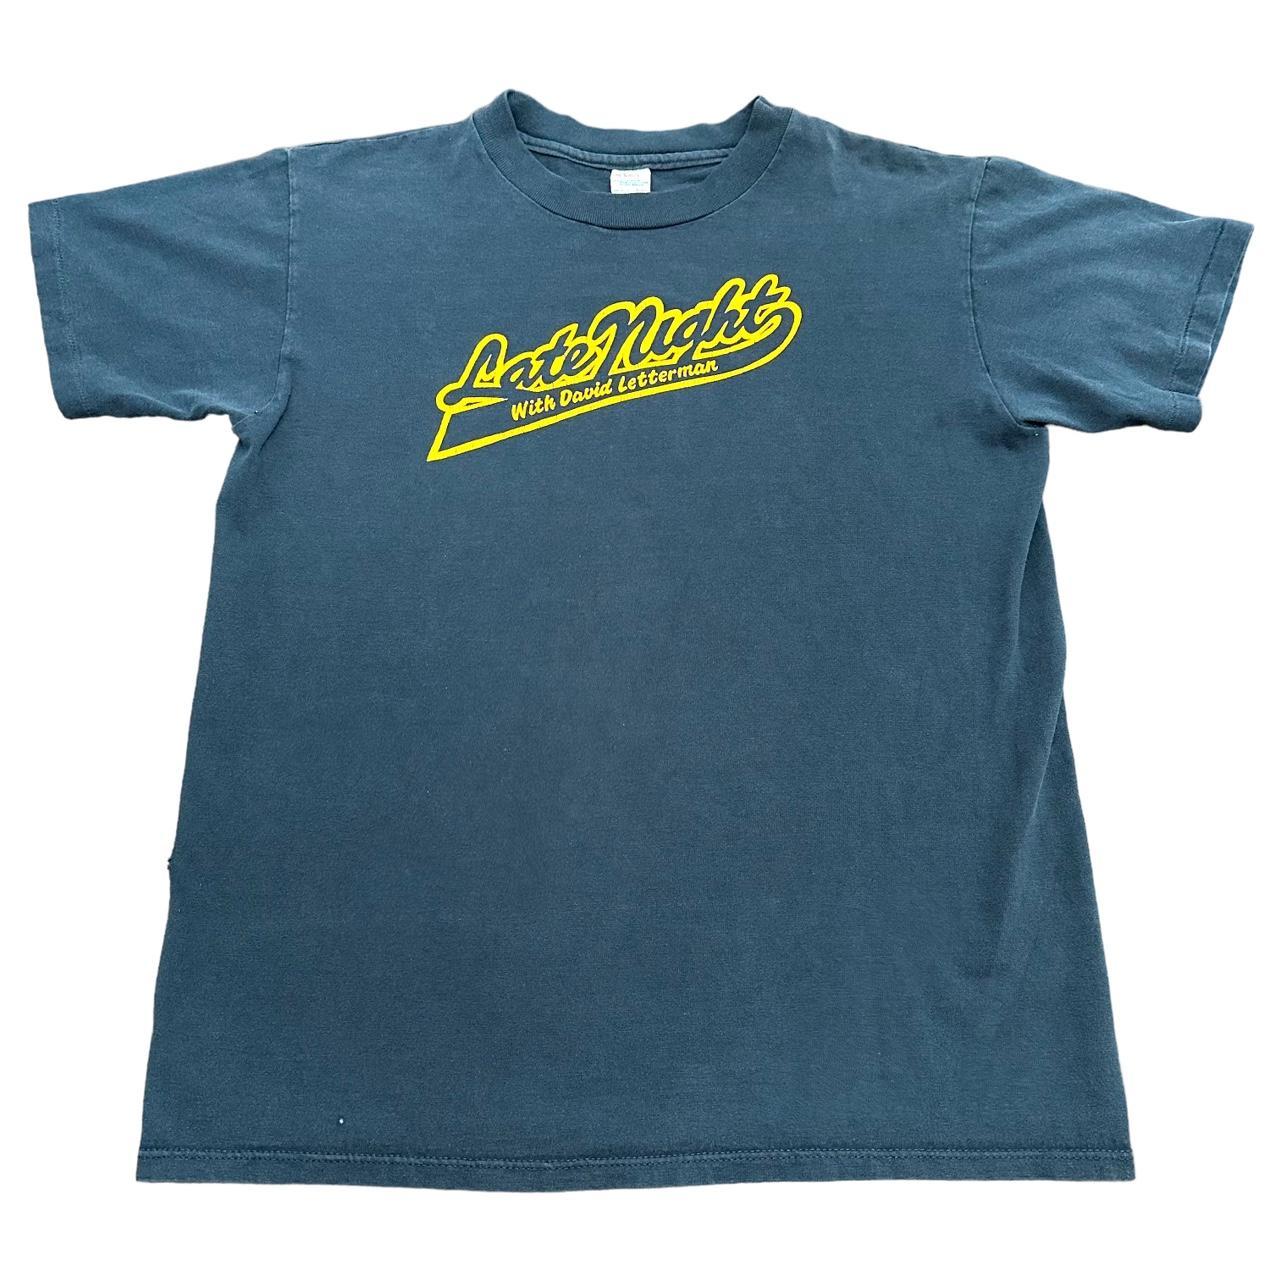 Vintage David Letterman Shirt Mens Large Blue Late... - Depop